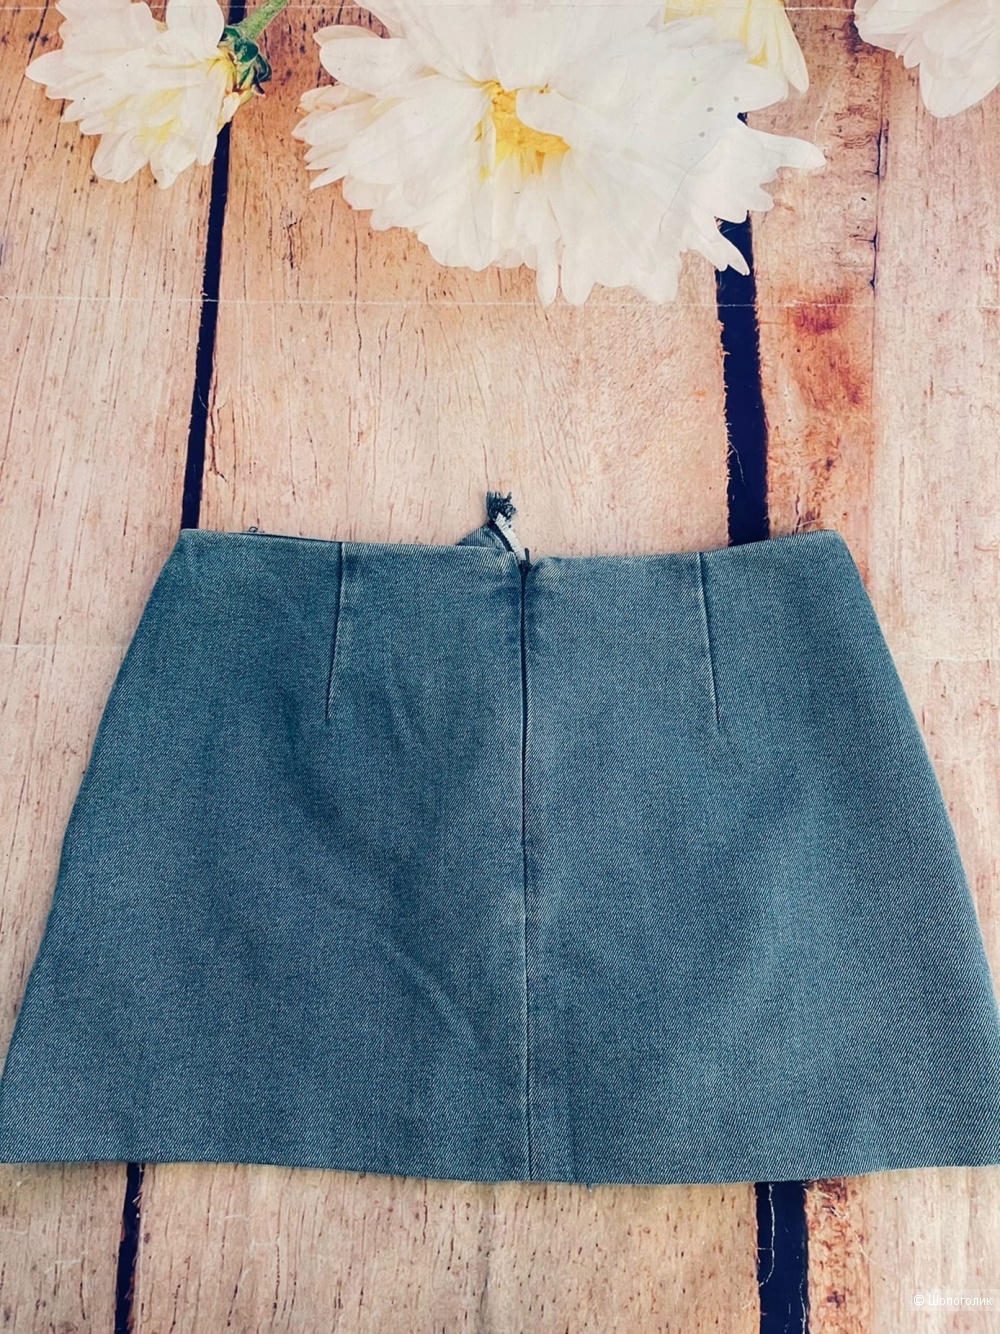 Джинсовая юбка от Zara М/L